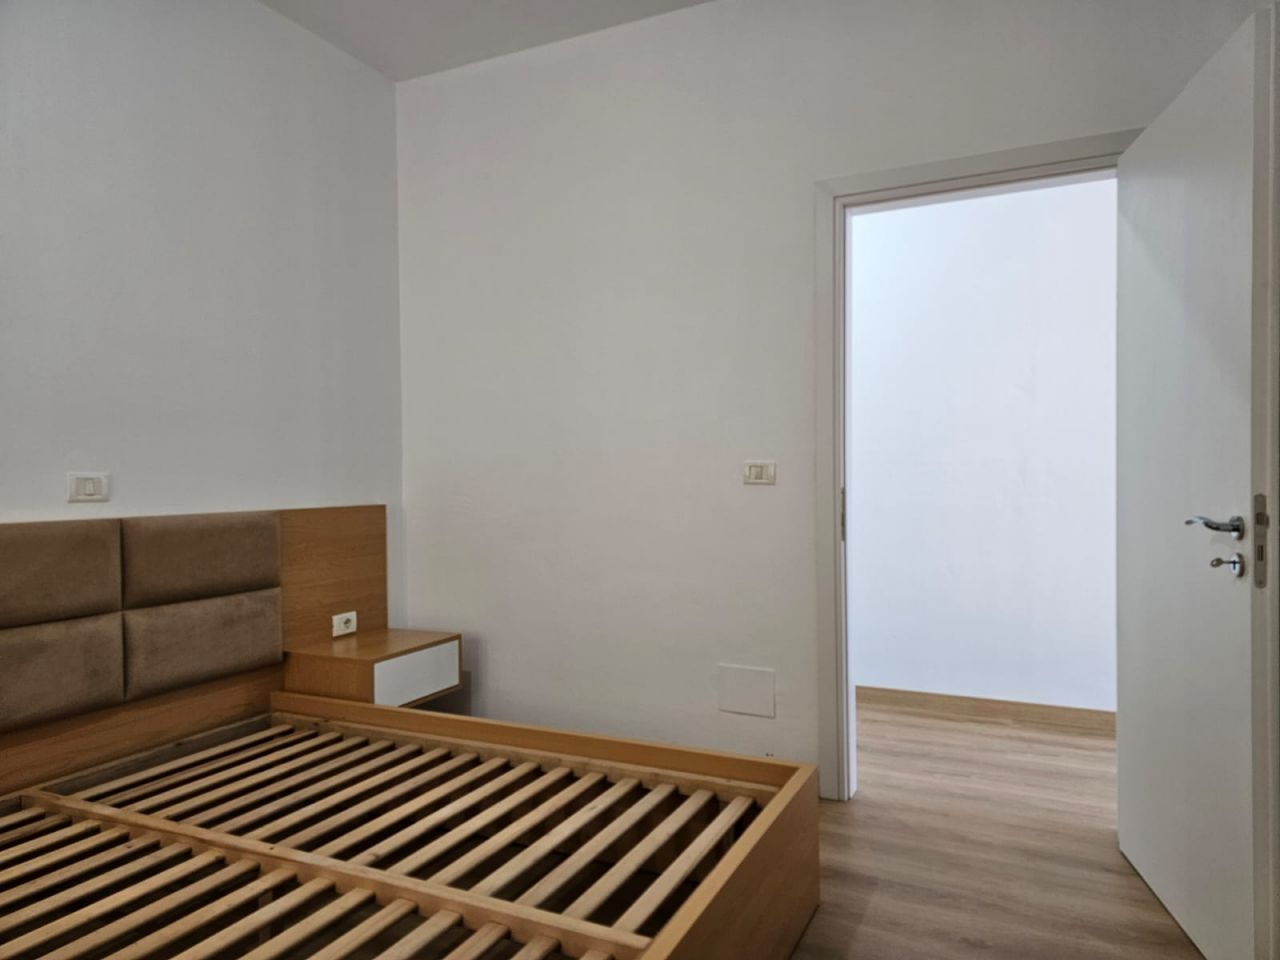 Apartment Mit Einem Schlafzimmer Zum Verkauf In Saranda Albanien In Einer Gut Organisierten Nachbarschaft Mit Herrlichem Meerblick